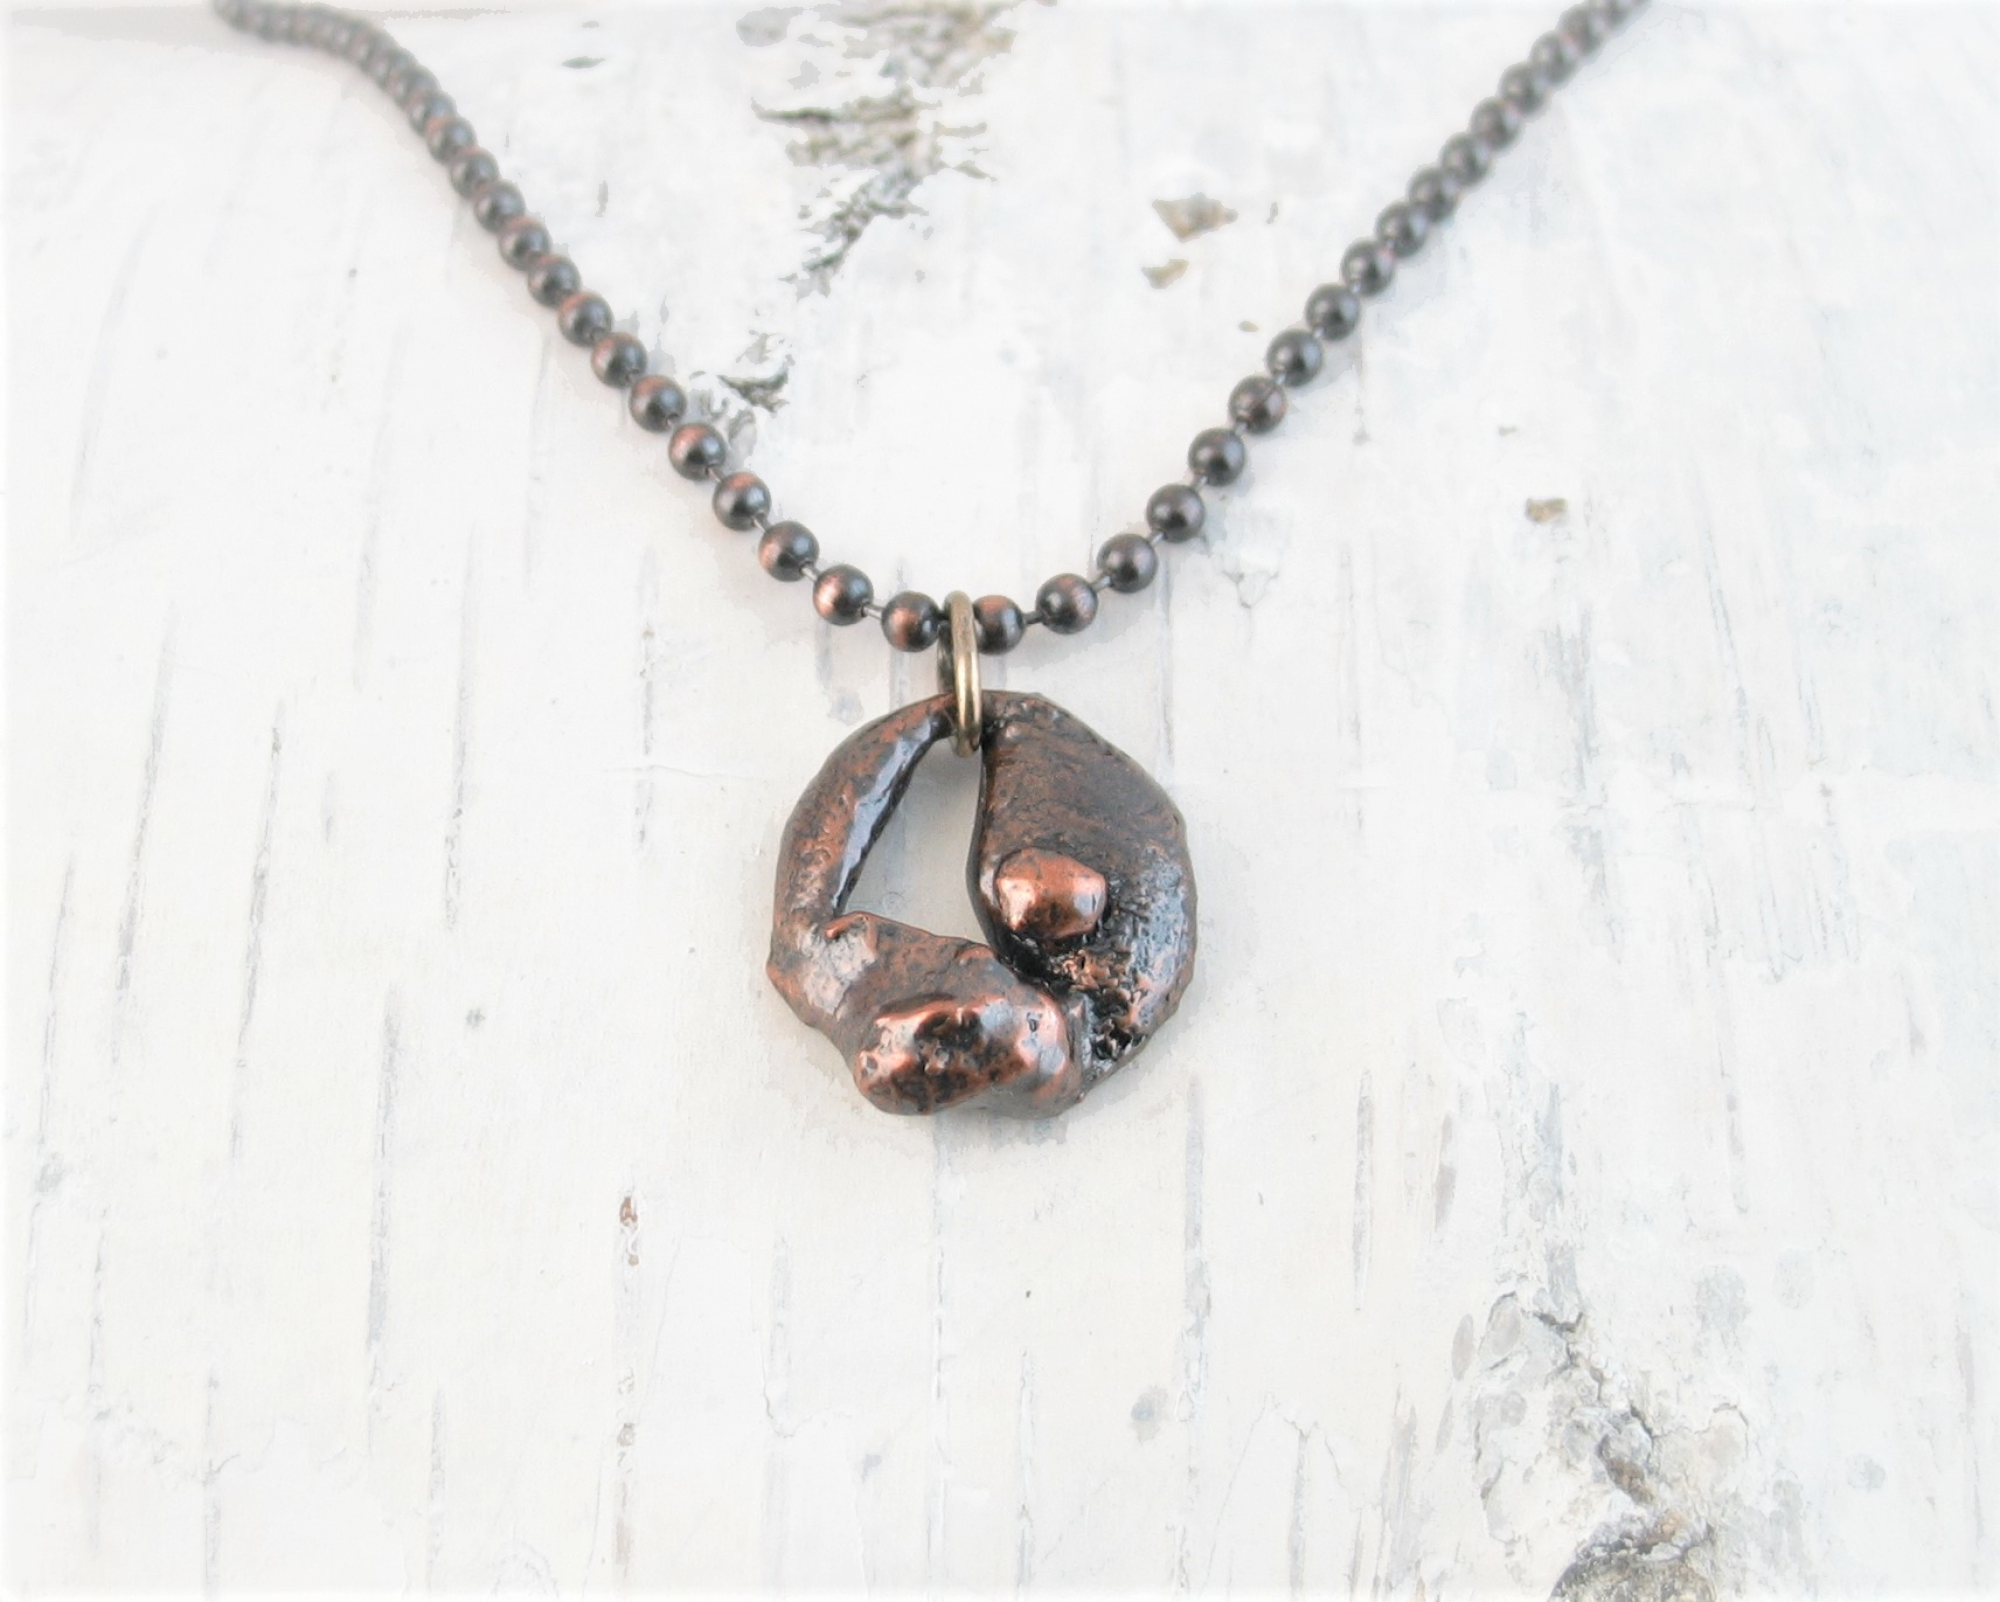 Copper Pendant on copper ball chain